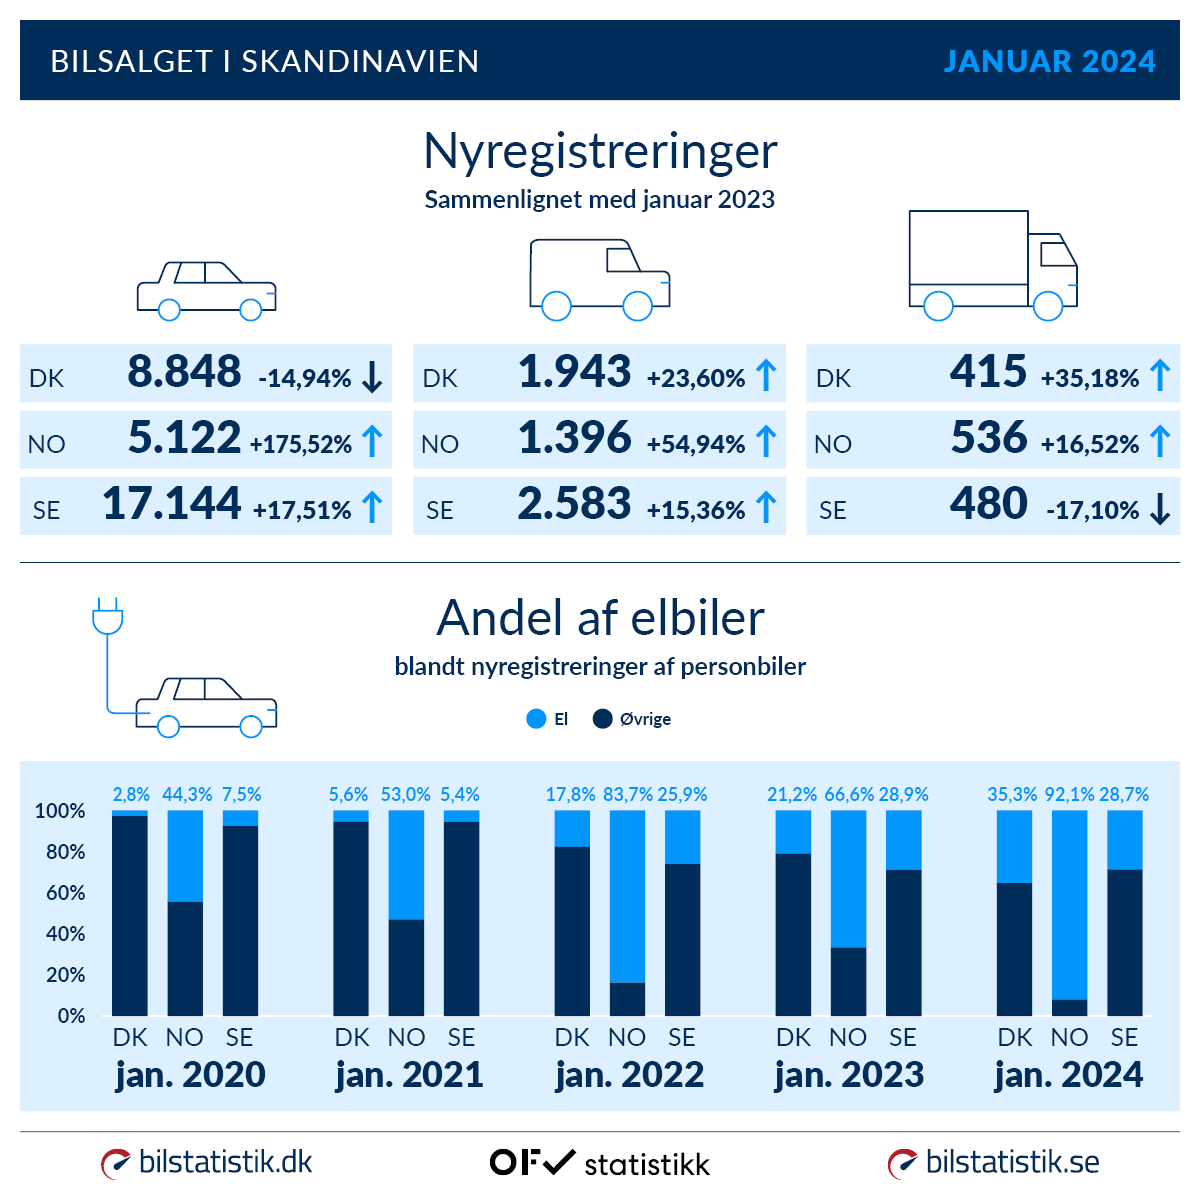 Bilsalget i Skandinavien, Nyregistreringer januar